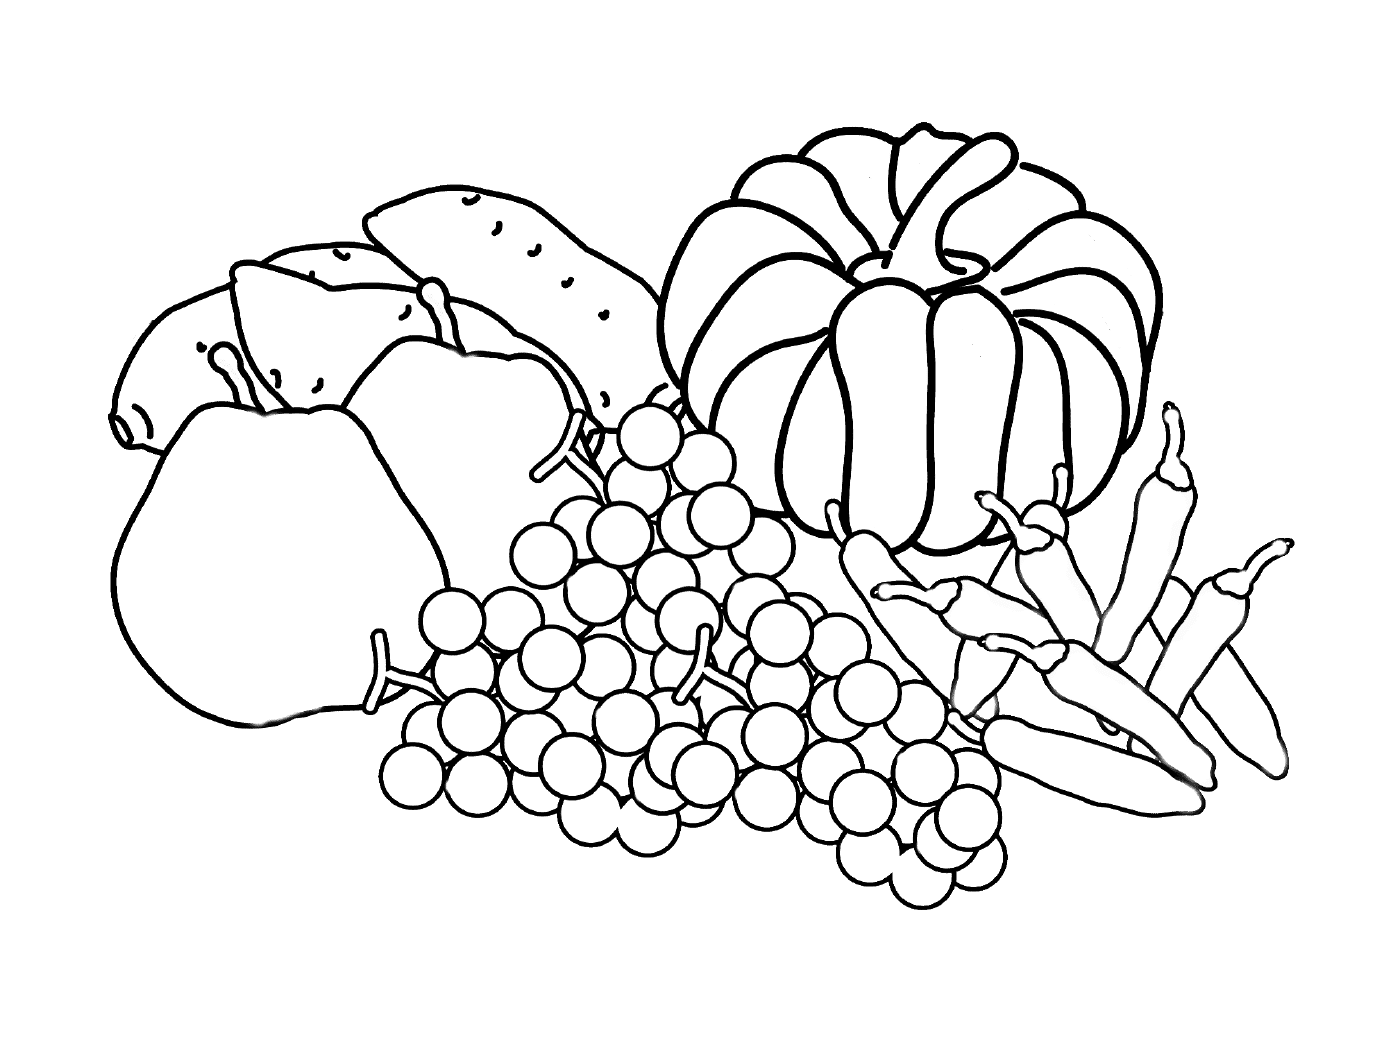  Una variedad de frutas 